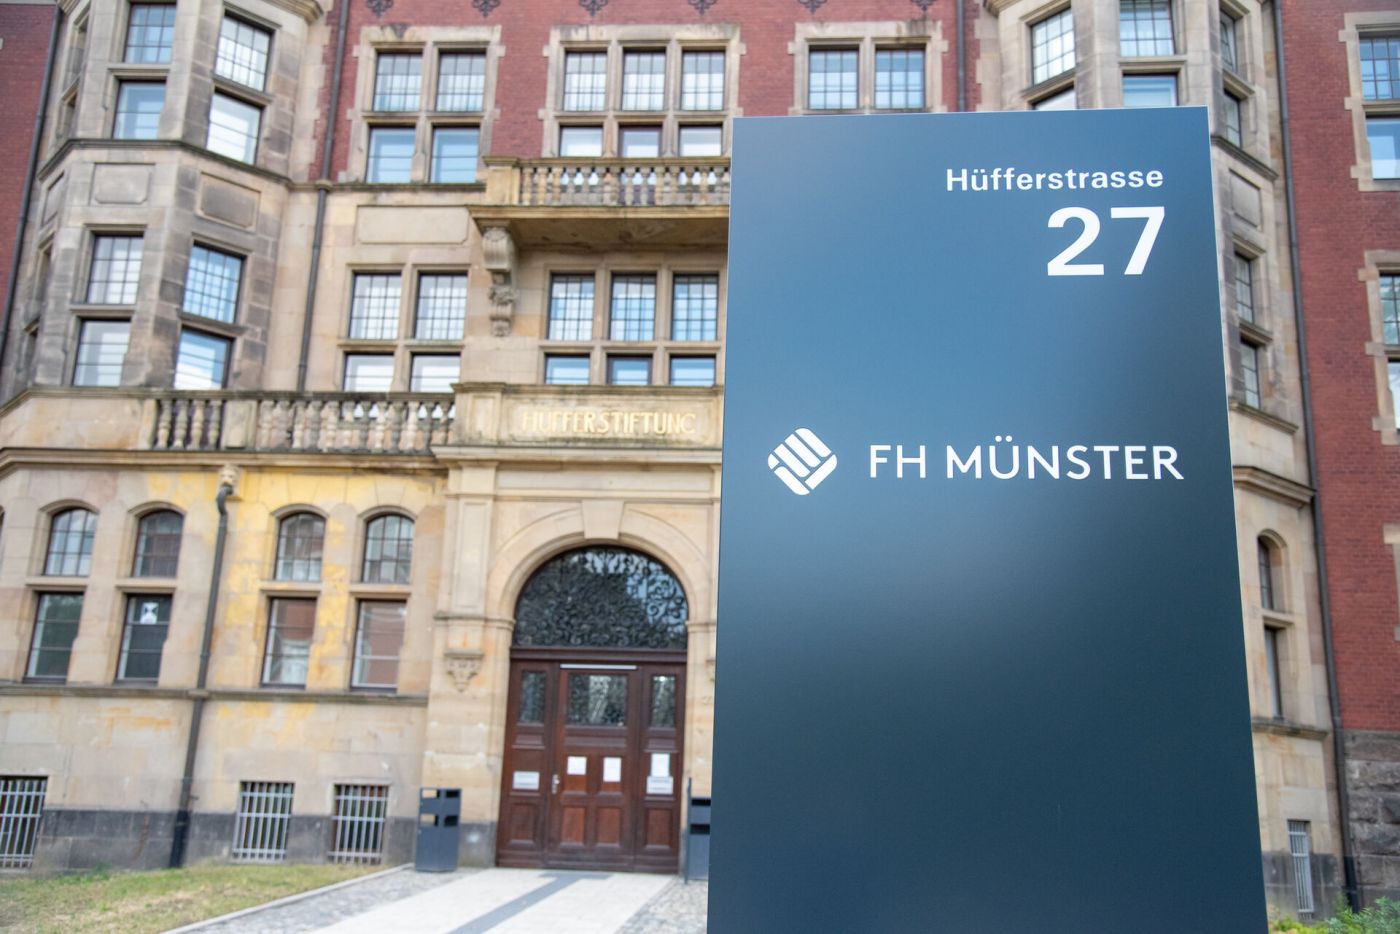 Der Haupteingang der Hüfferstiftung ist im Hintergrund zu sehen - vordergründig ist eine Stele mit der Adresse - Hüfferstrasse 27 - sowie dem Logo der FH Münster zu sehen.